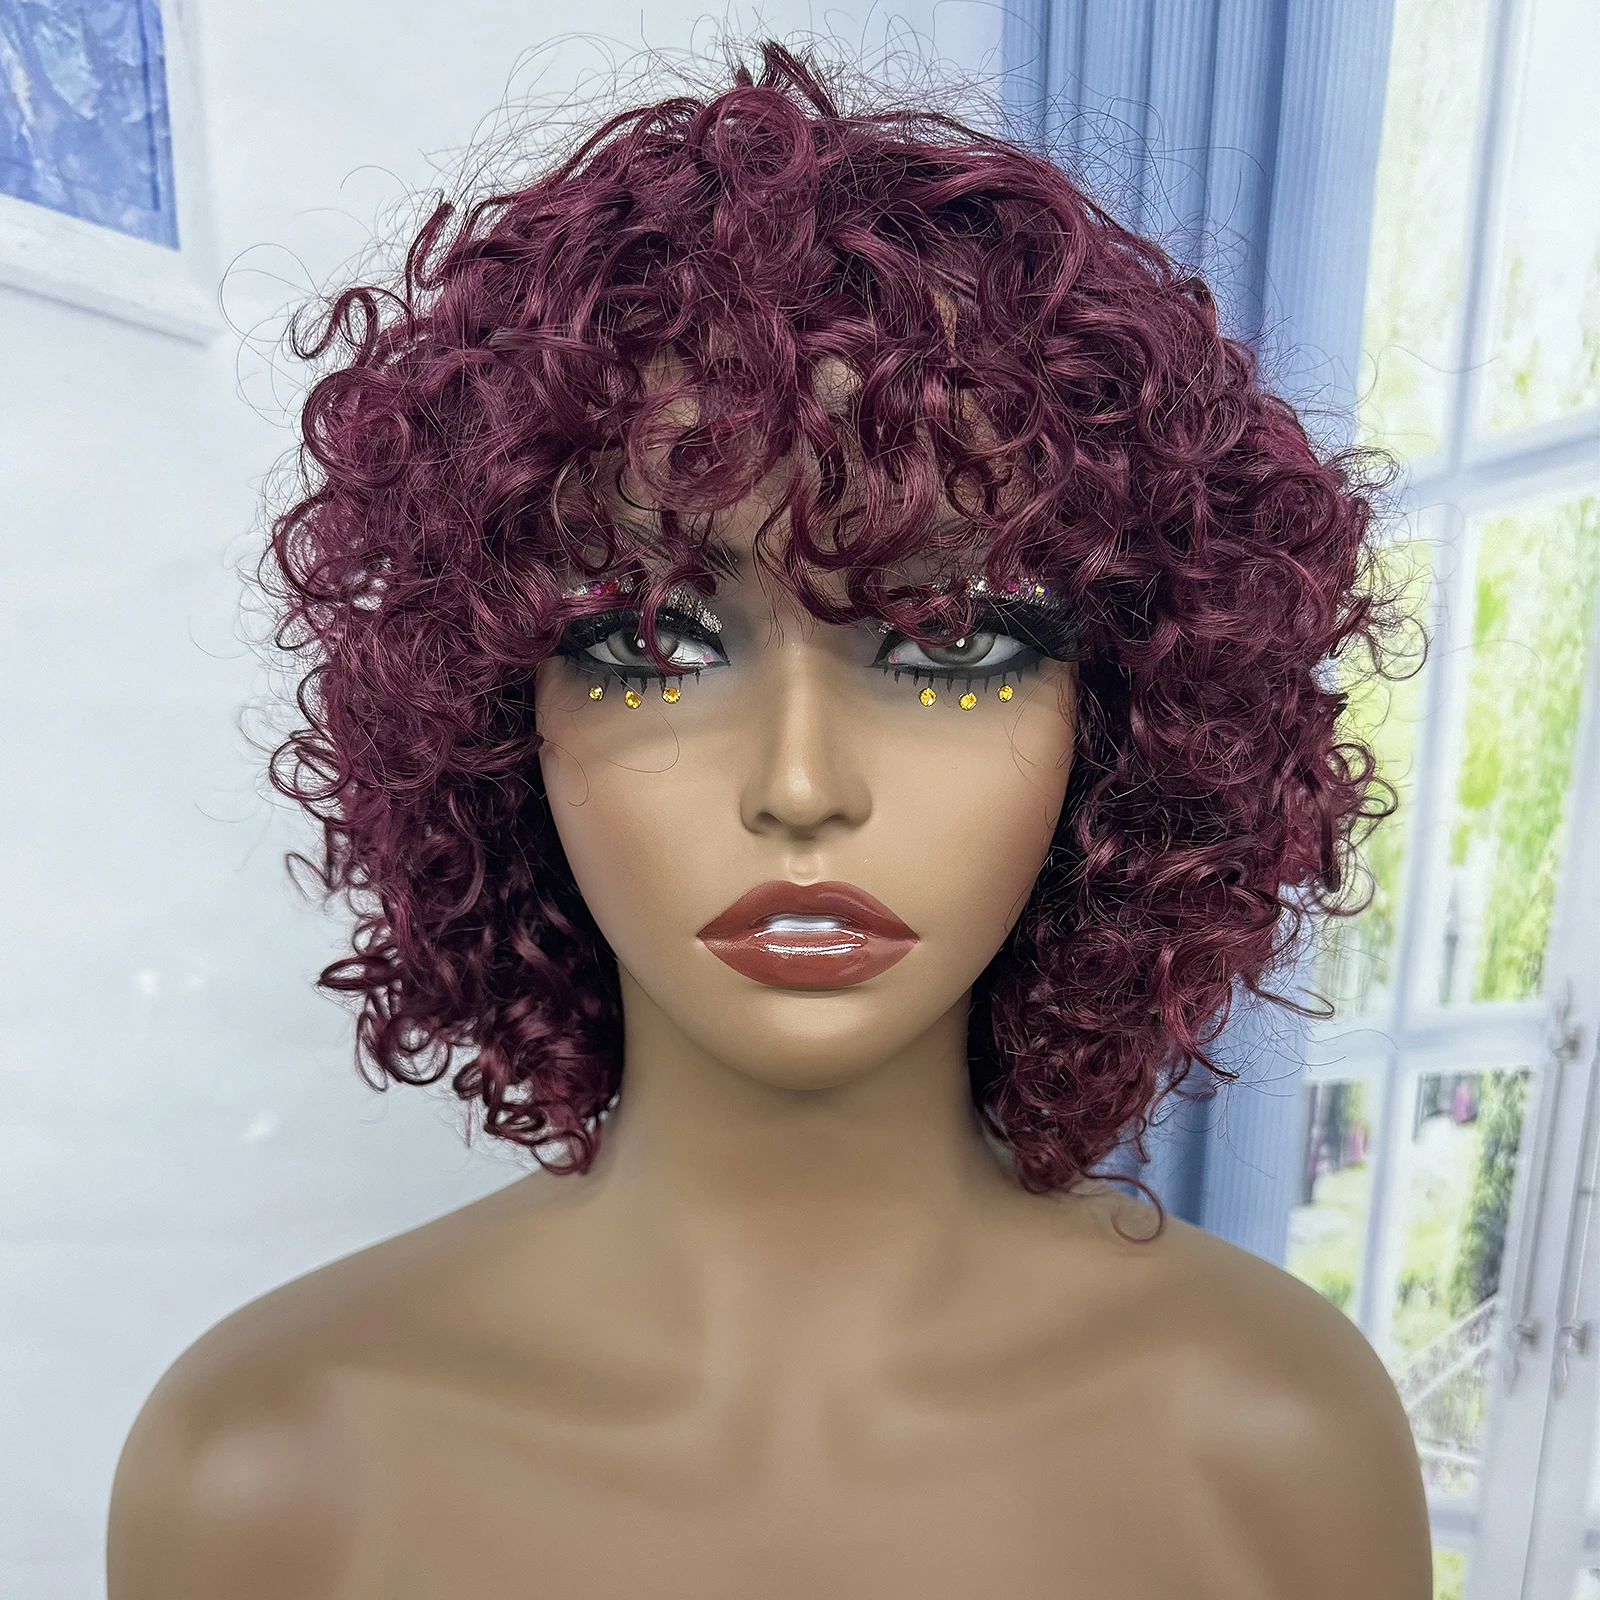 Парики из человеческих волос 4 # шоколадной расцветки, волнистые, с челкой, для чернокожих женщин, плотность 200%, парик с короткими волнистыми волосами, парики машинной работы